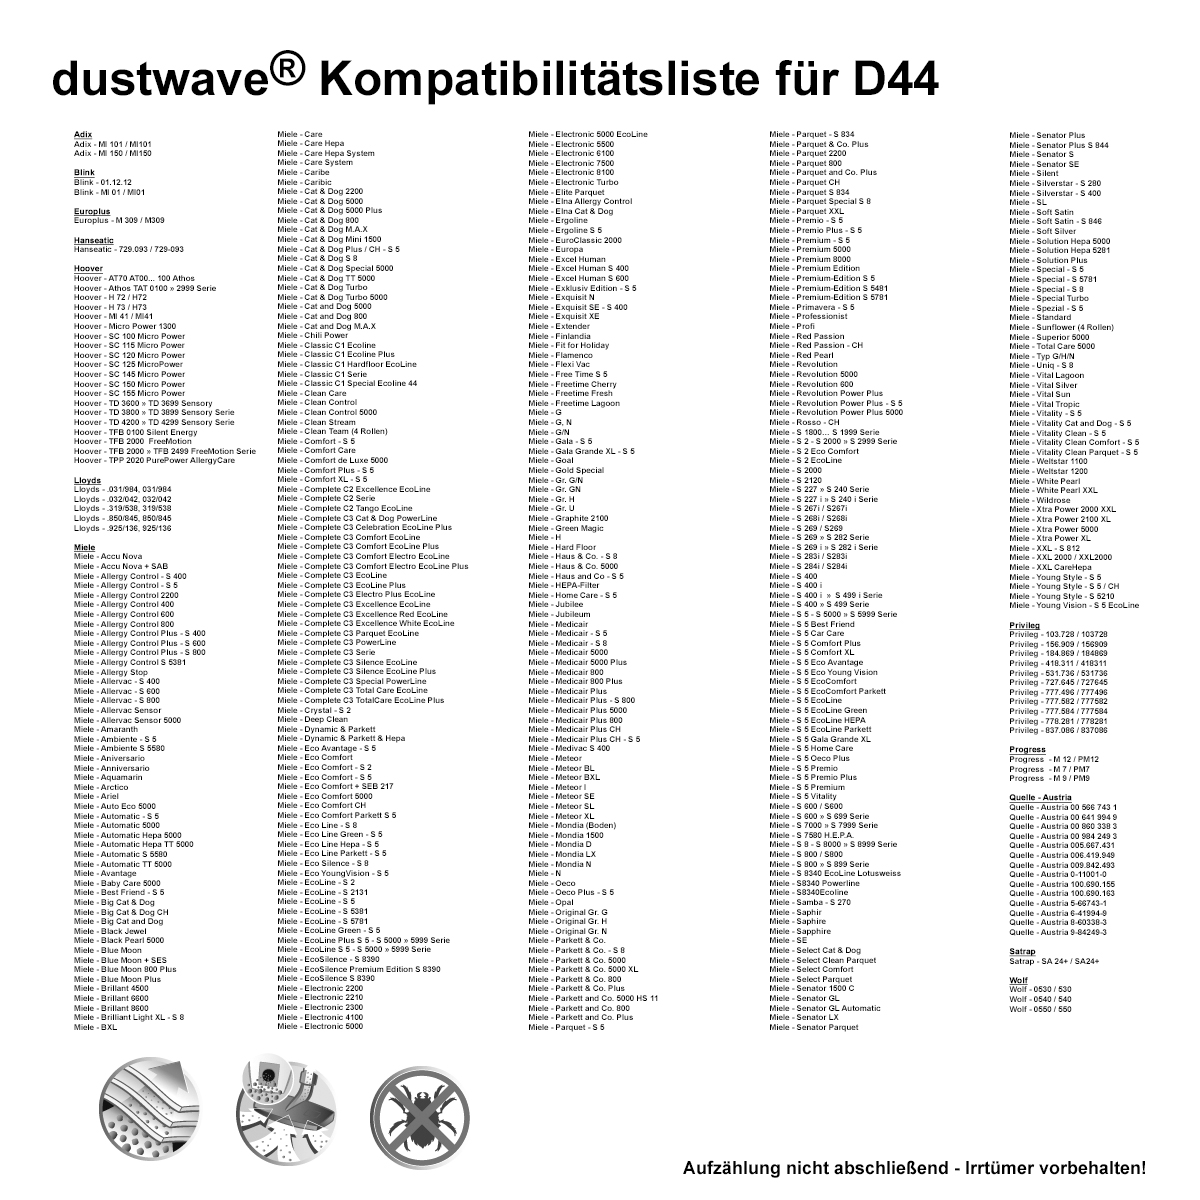 40 Staubsaugerbeutel | Staubbeutel passend für Miele S8 Duoflex Bodenstaubsauger / dustwave® Markenstaubbeutel / Made in Germany + inkl. Microfilter